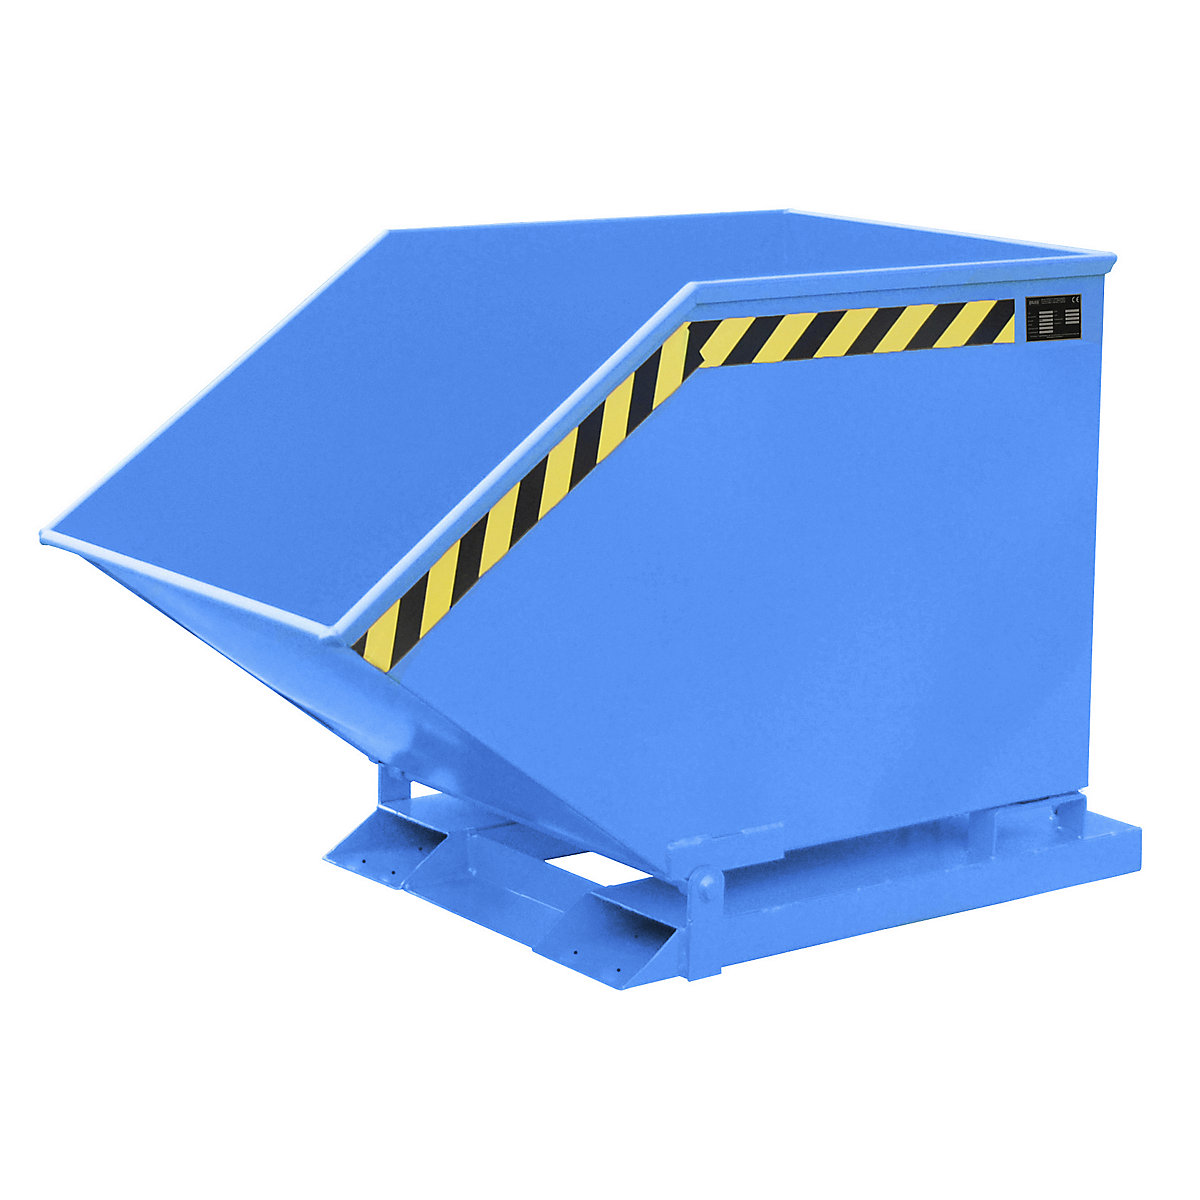 Kiepbak met klapmechanisme – eurokraft pro, kokervormig, inhoud 0,4 m³, blauw RAL 5012-9